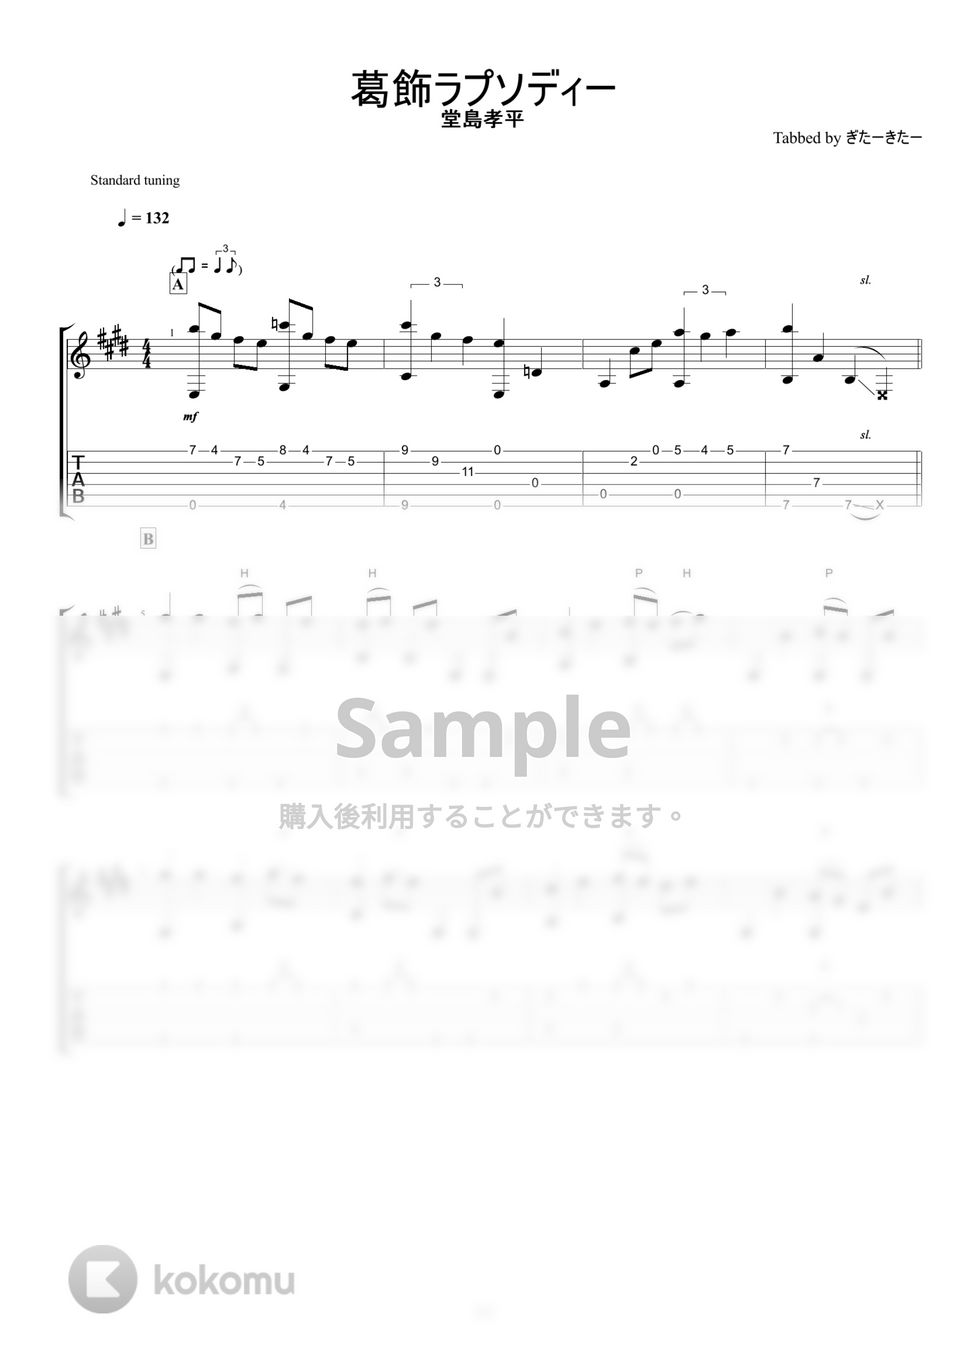 こち亀 - 葛飾ラプソディー (ソロギターアレンジ) by ぎたーきたー